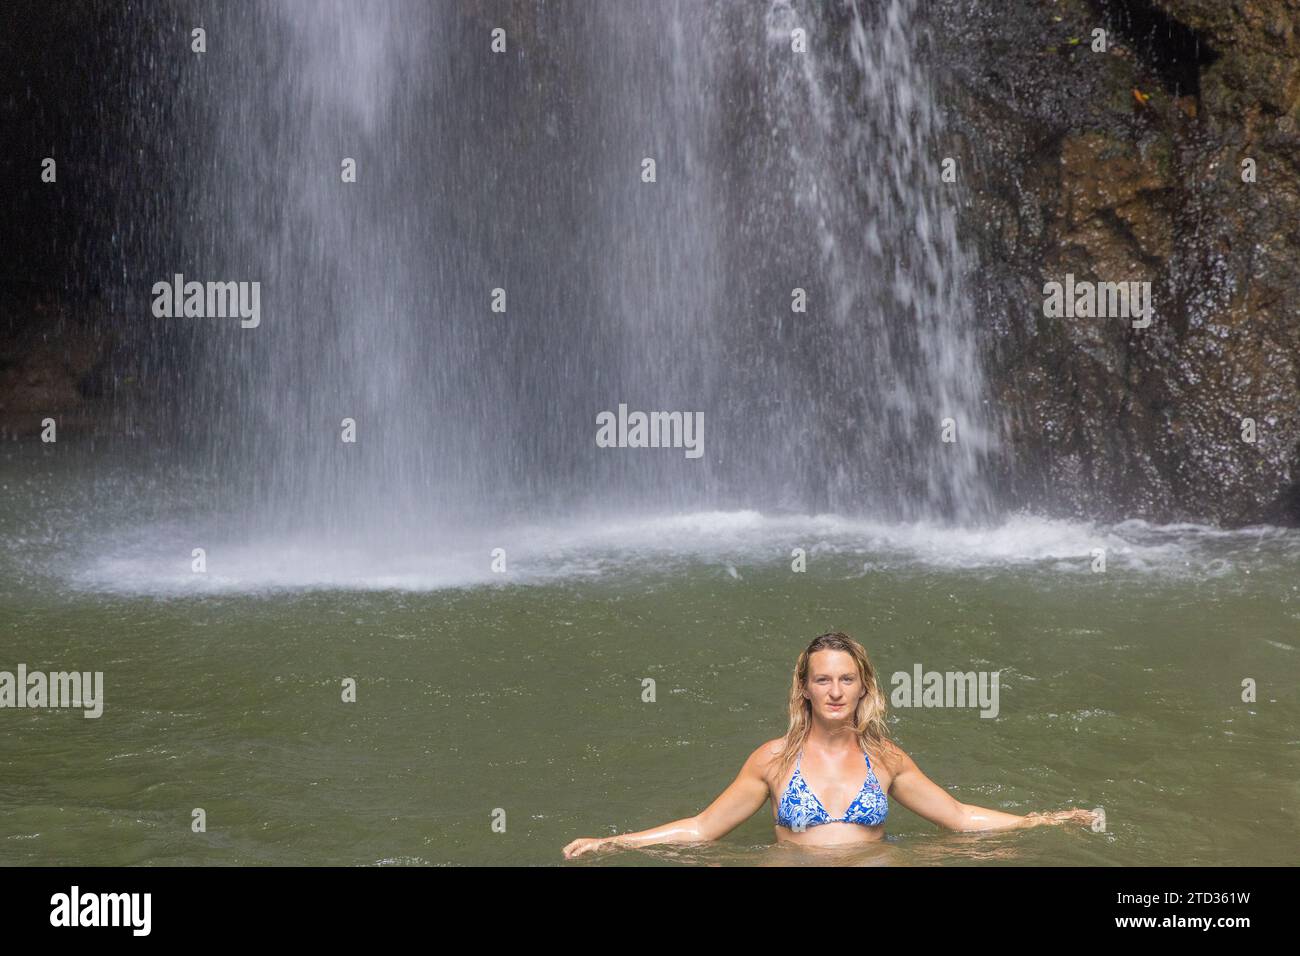 Une jeune femme en maillot de bain à la cascade de Leke Leke dans une forêt tropicale luxuriante, Bali, Indonésie Banque D'Images